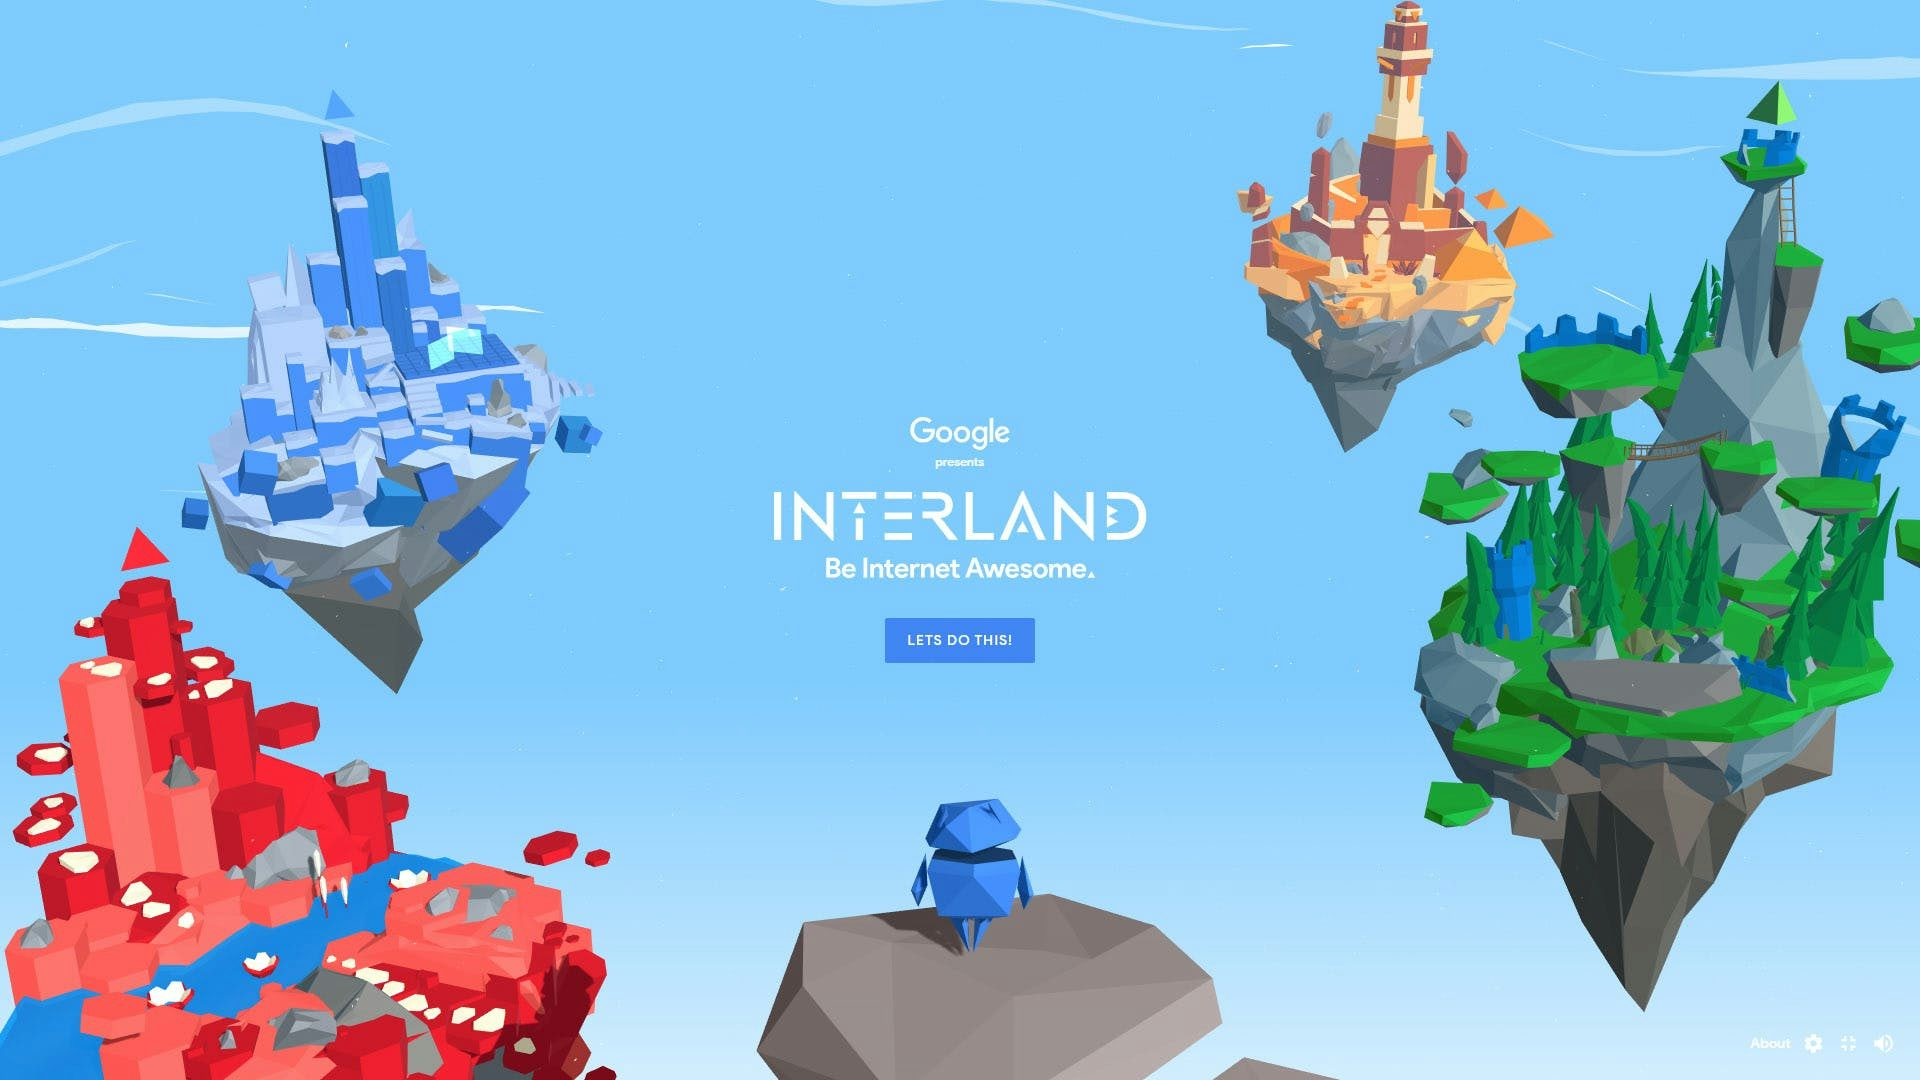  Google Interlands startskärm med lekfull miljö